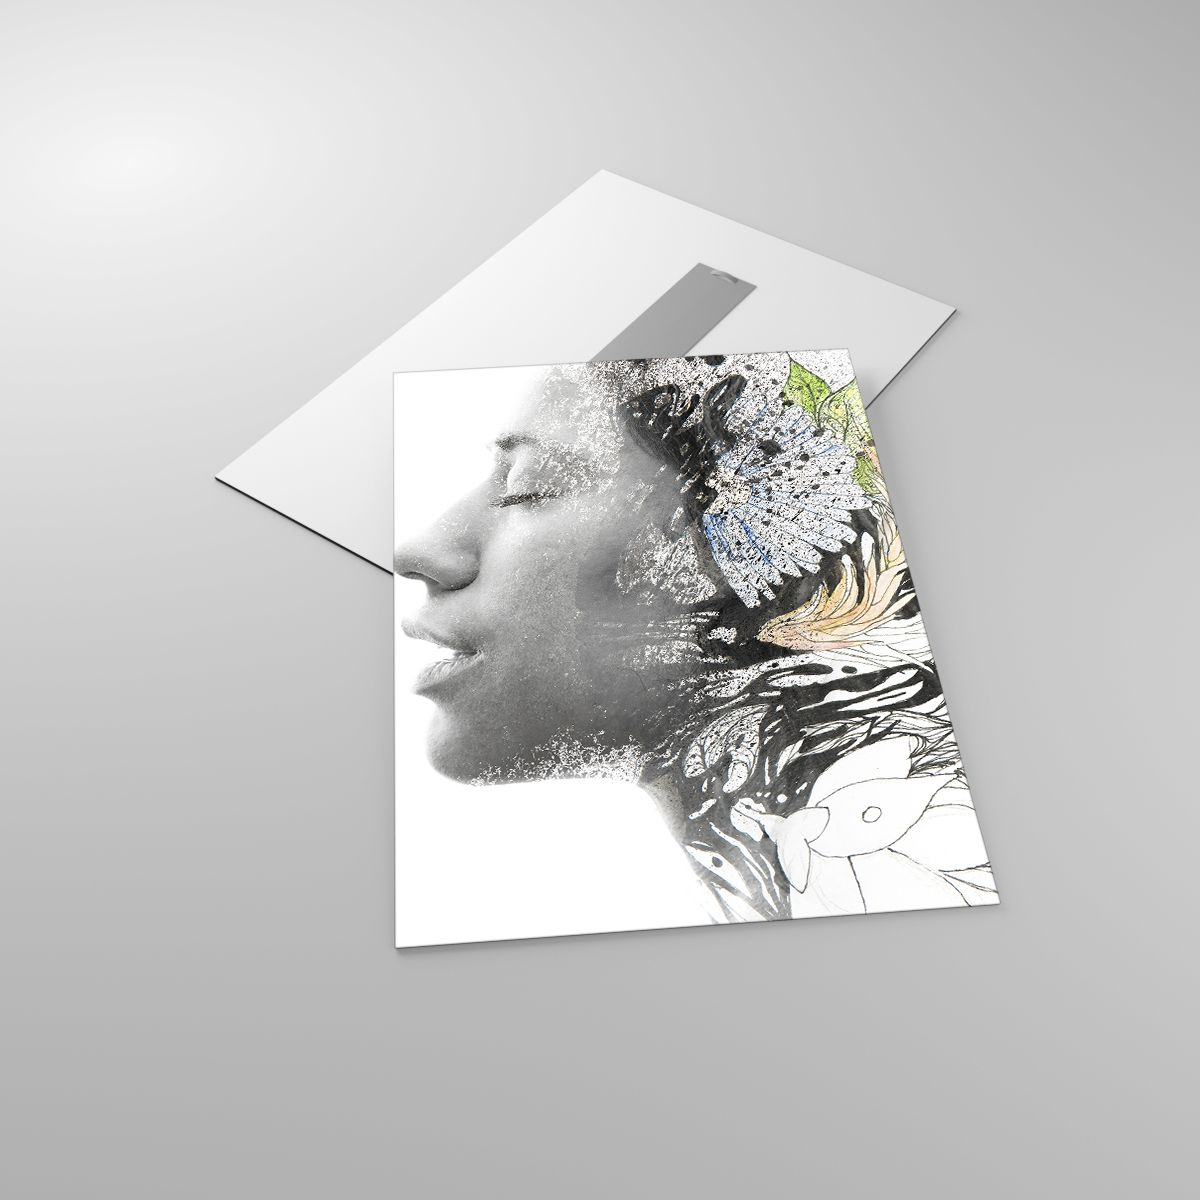 Glasbild Abstraktion, Glasbild Das Gesicht Der Frau, Glasbild Blumen, Glasbild Kunst, Glasbild Grafik